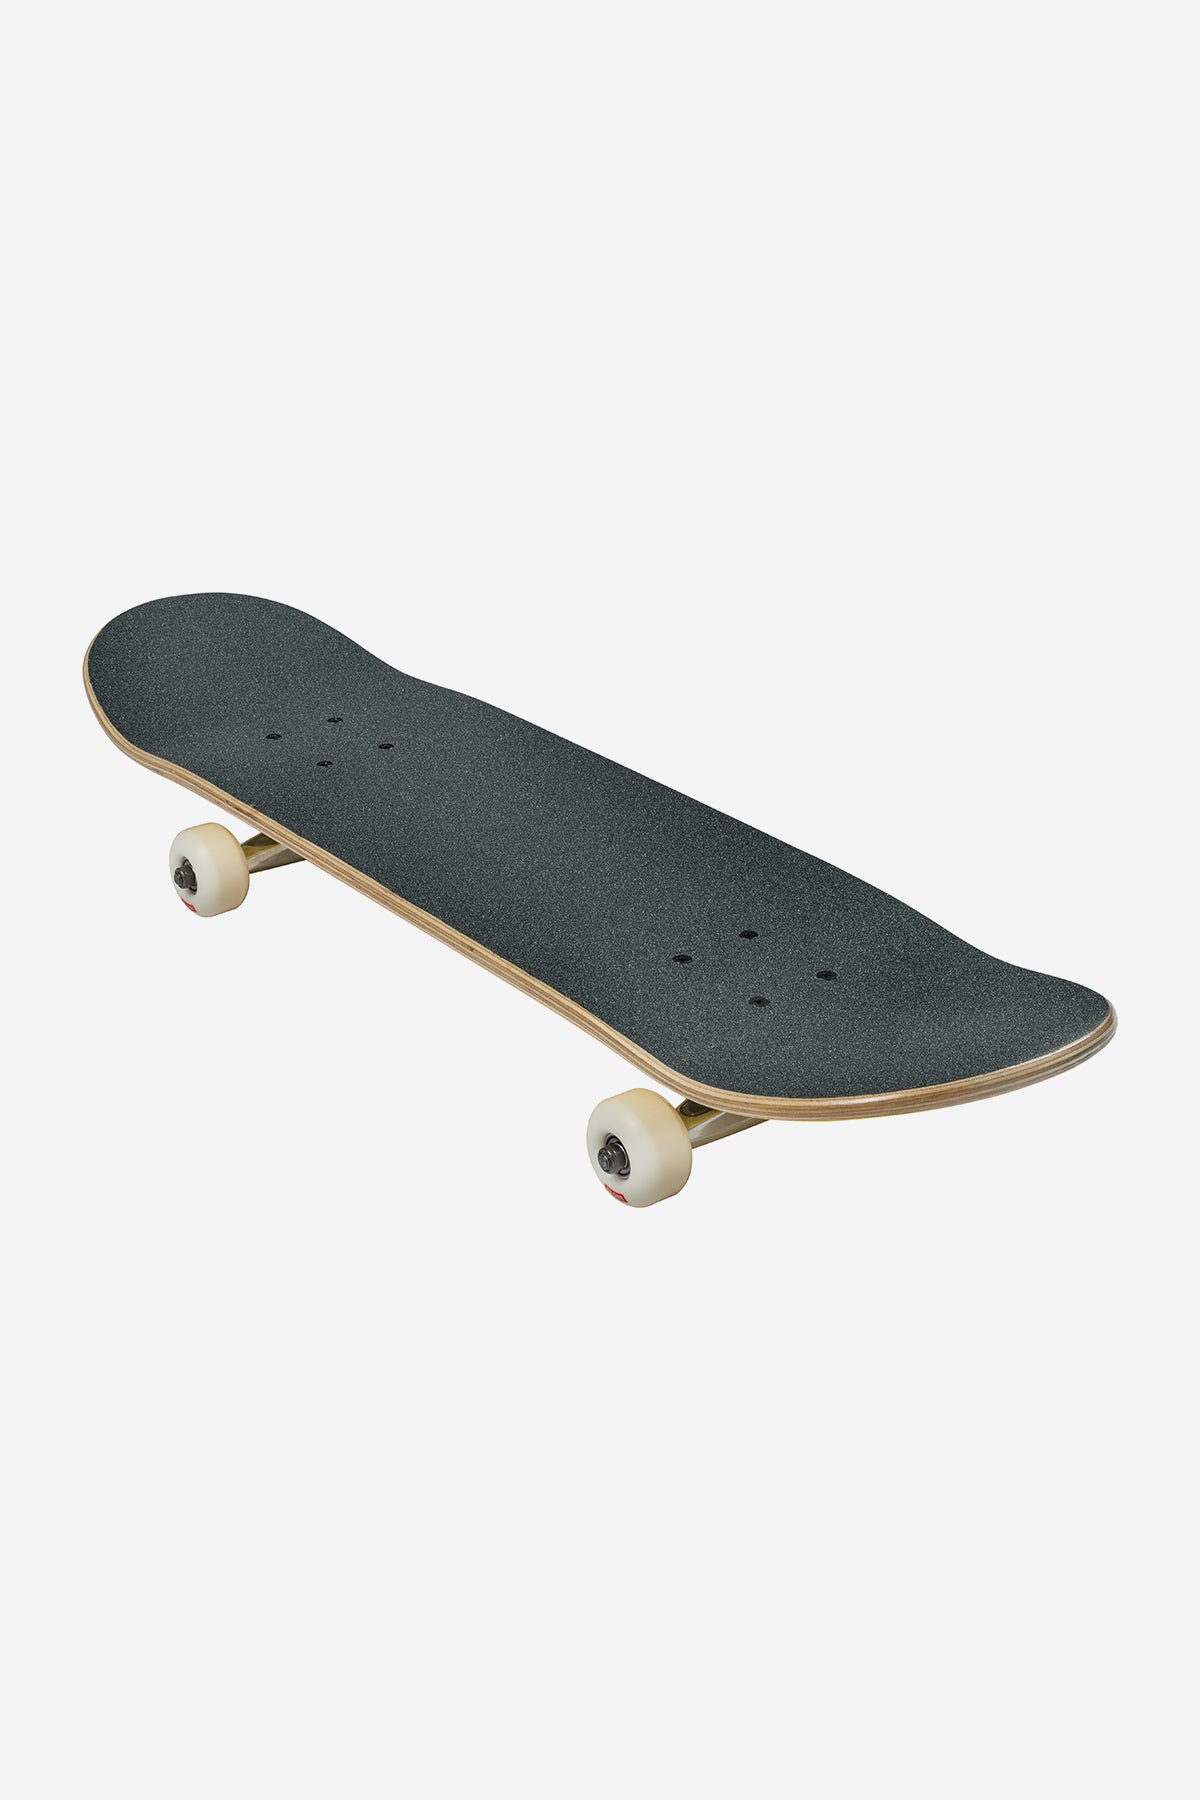 Globe - Goodstock - Red - 7.75" Komplett Skateboard